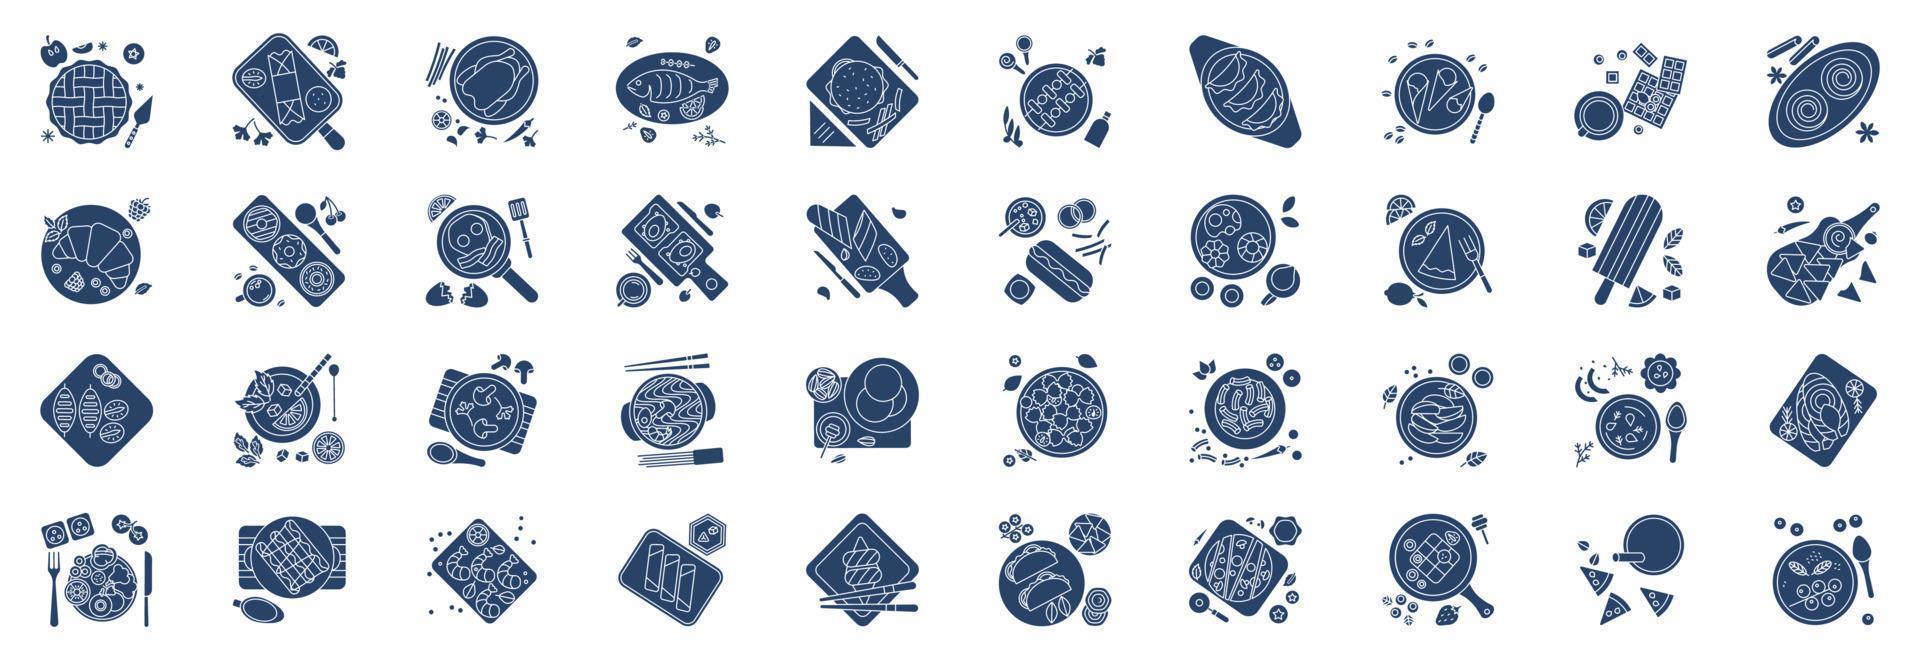 verzameling van pictogrammen verwant naar schotel en prima dineren, inclusief pictogrammen Leuk vinden appel taart, Chinese, mojito en meer. vector illustraties, pixel perfect reeks